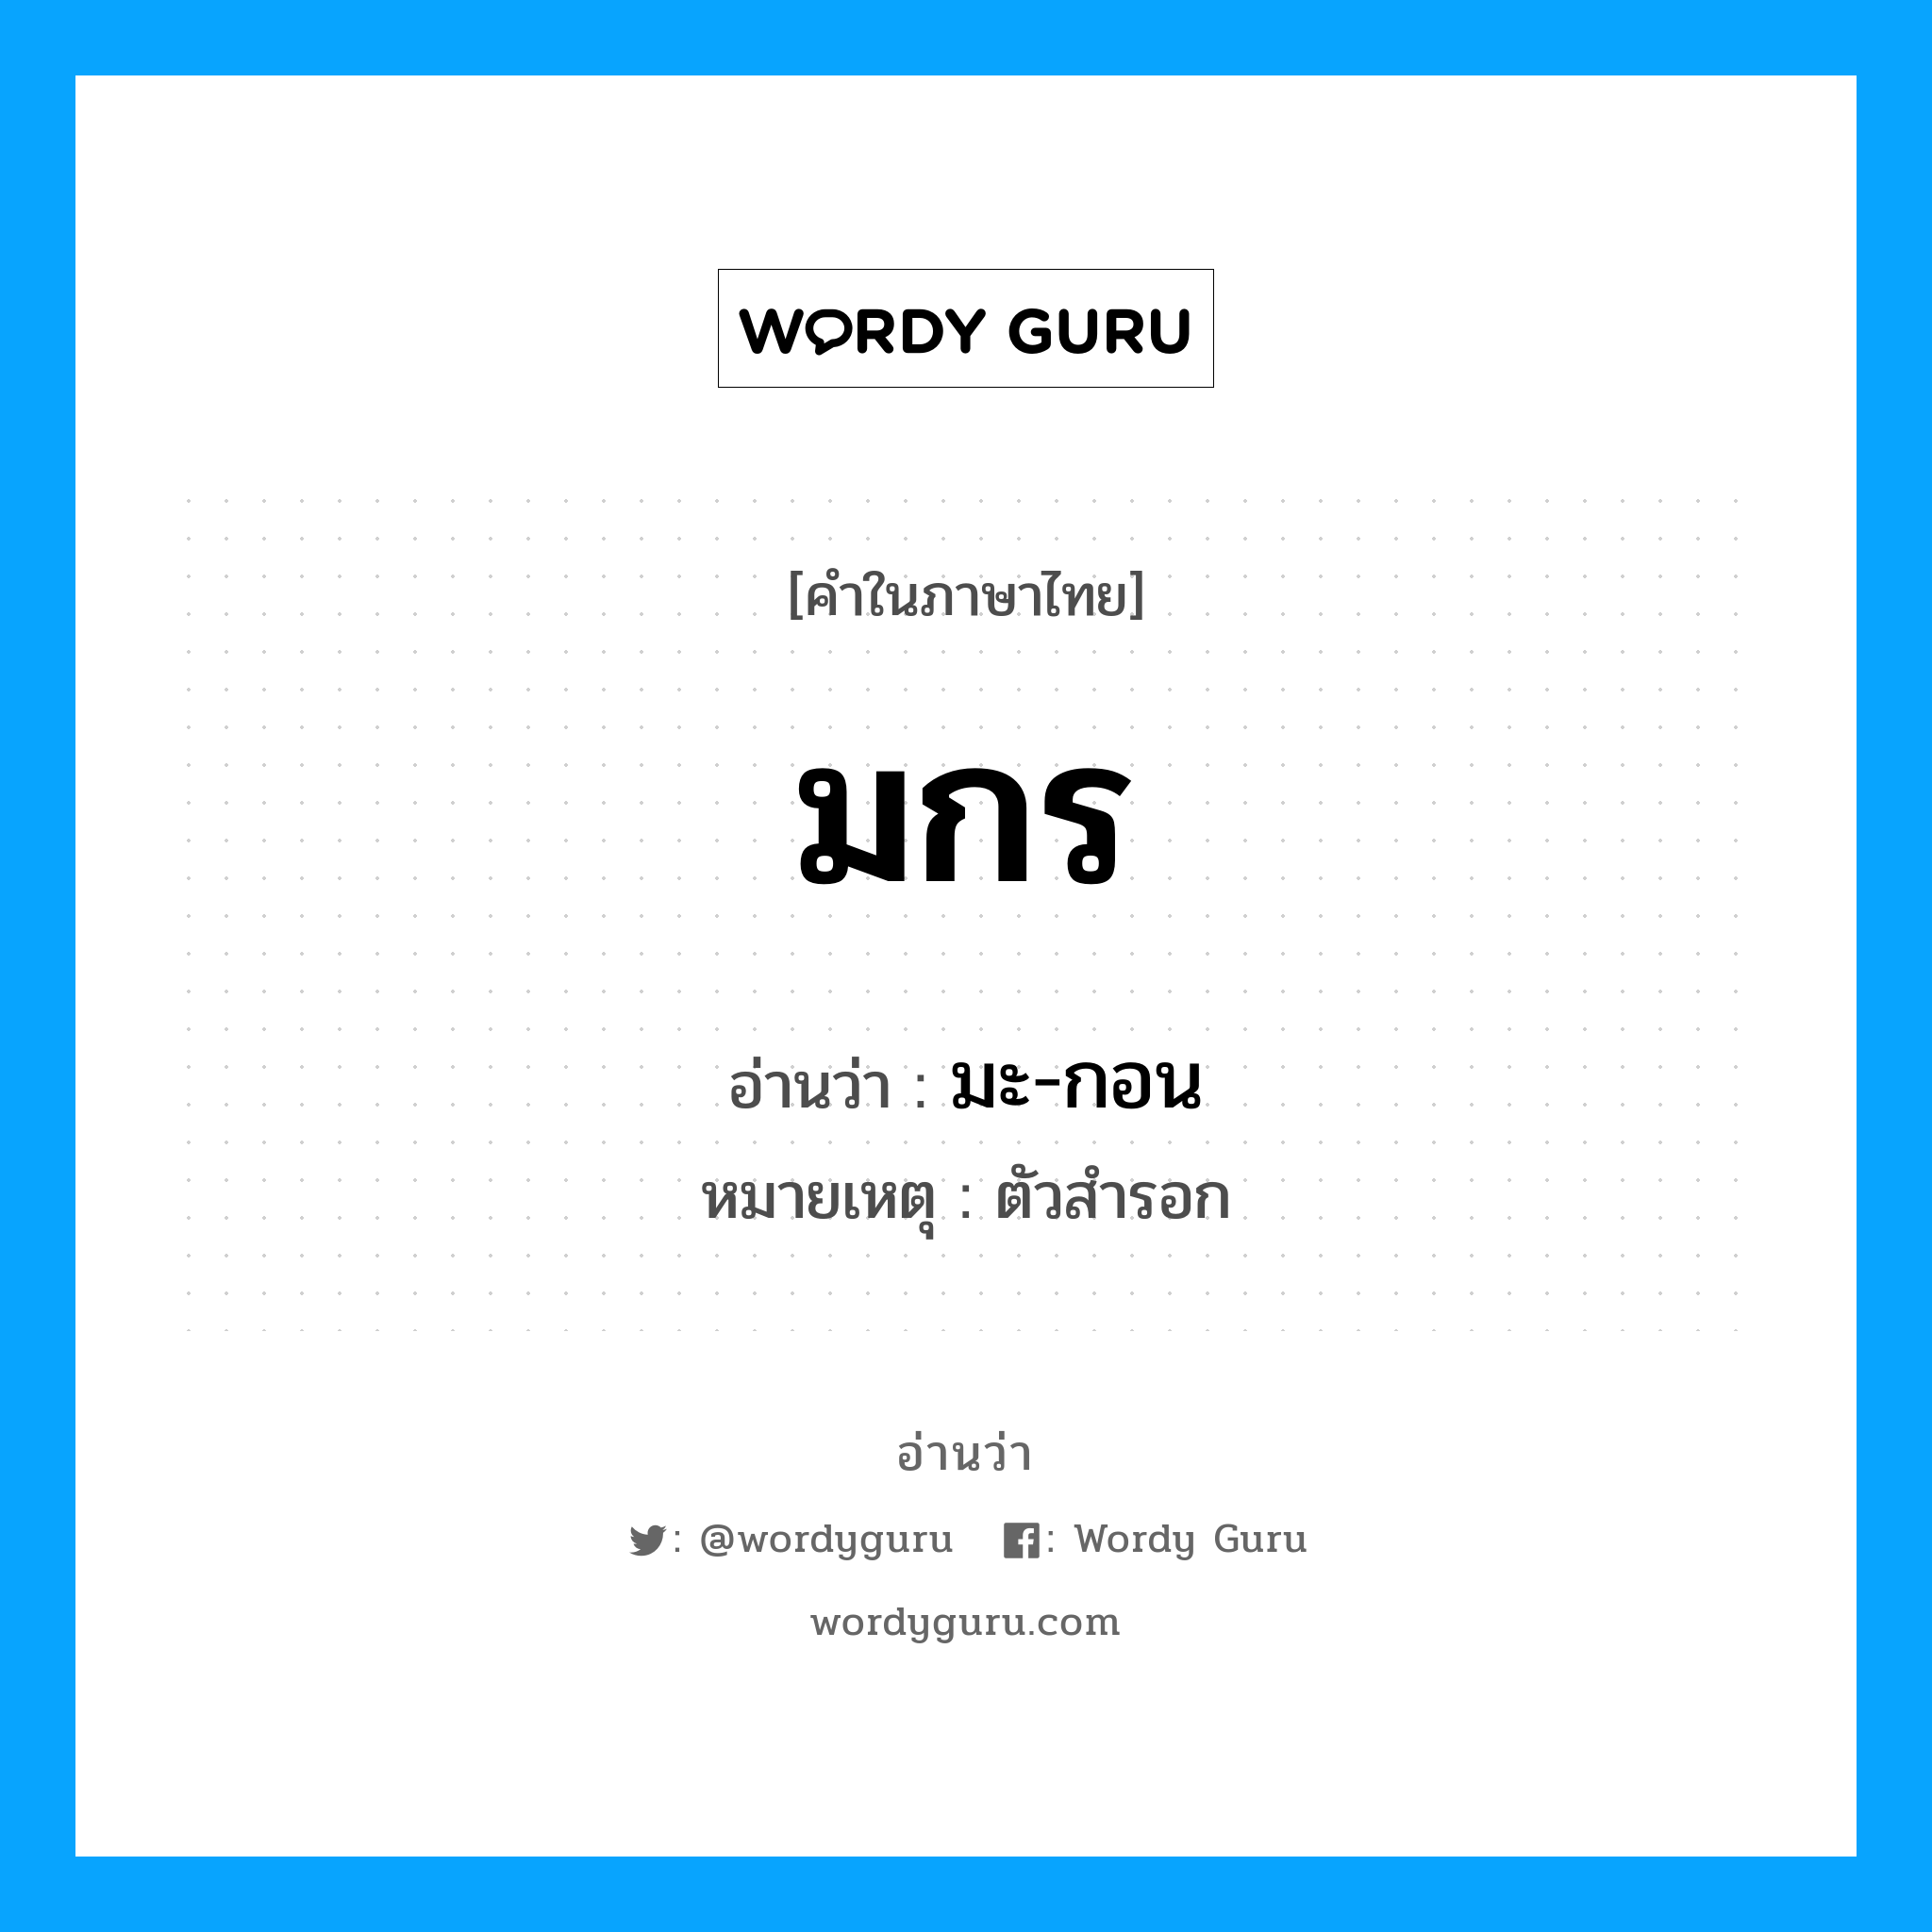 มะ-กอน เป็นคำอ่านของคำไหน?, คำในภาษาไทย มะ-กอน อ่านว่า มกร หมวด เทพนิยาย หมายเหตุ ตัวสำรอก หมวด เทพนิยาย